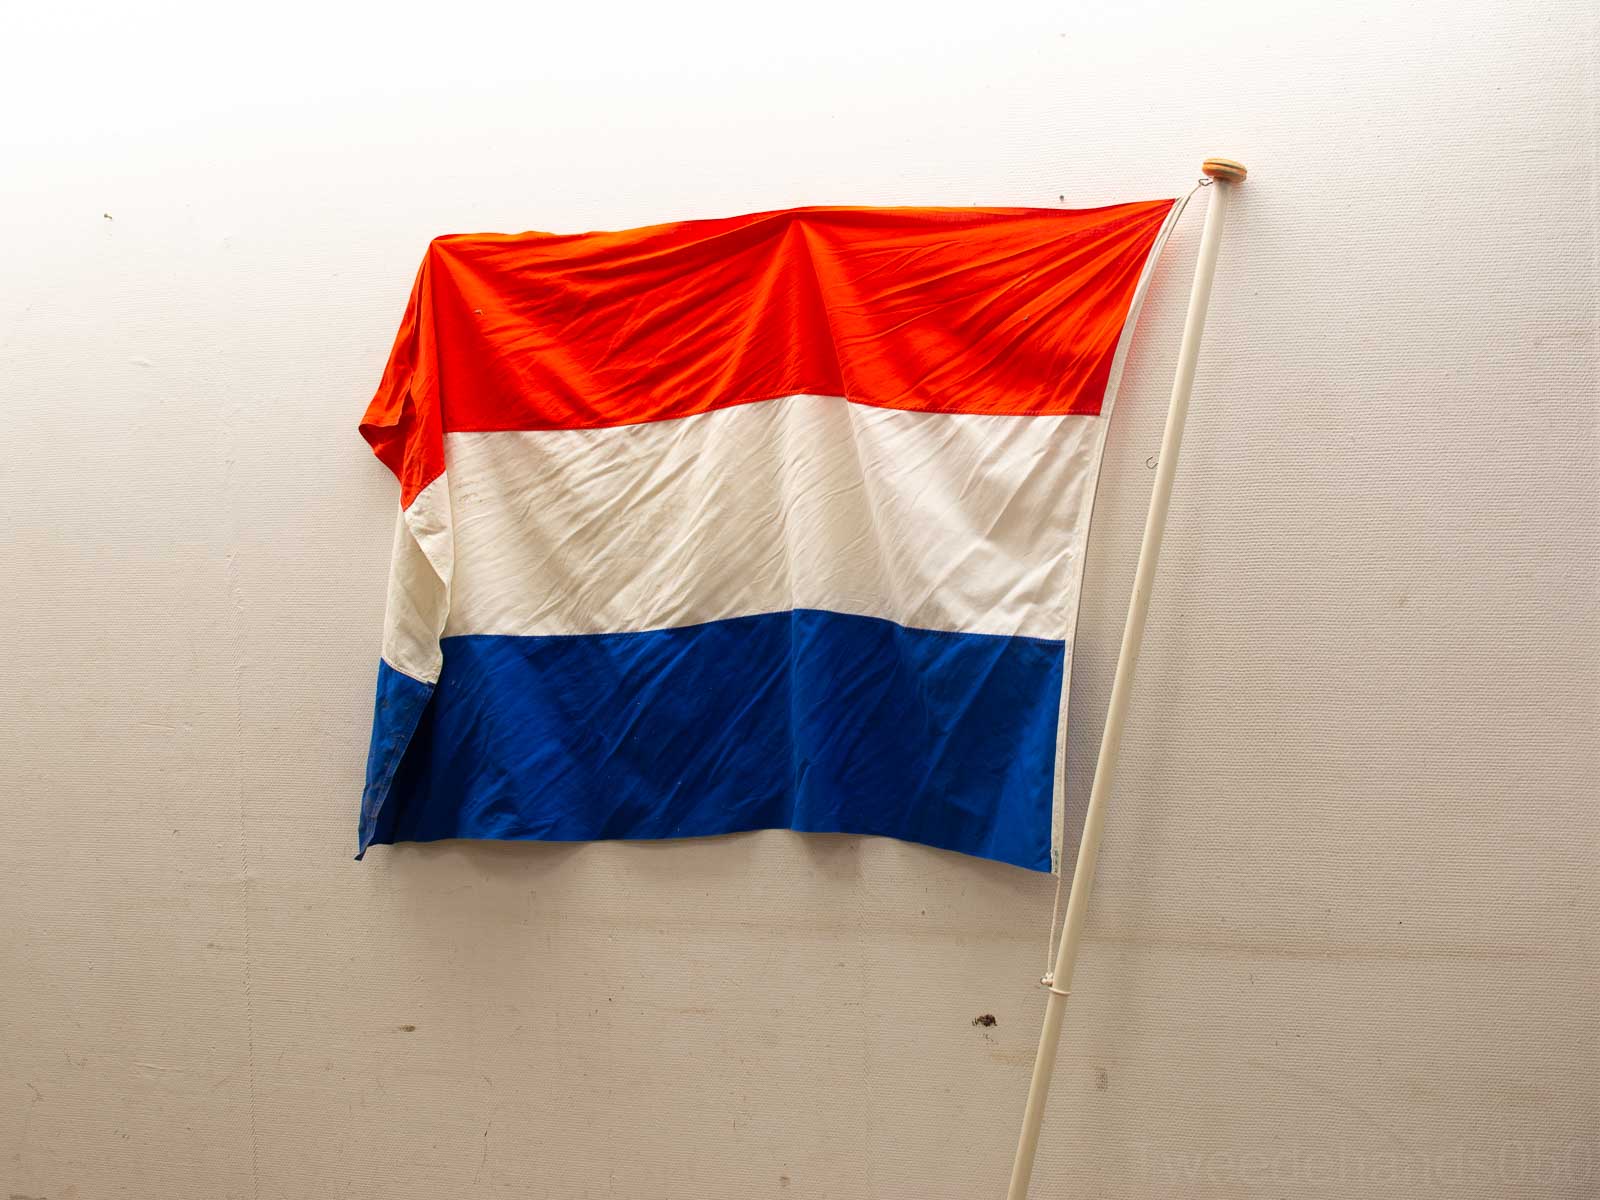 vlaggenstok met nederlandse vlag  28580